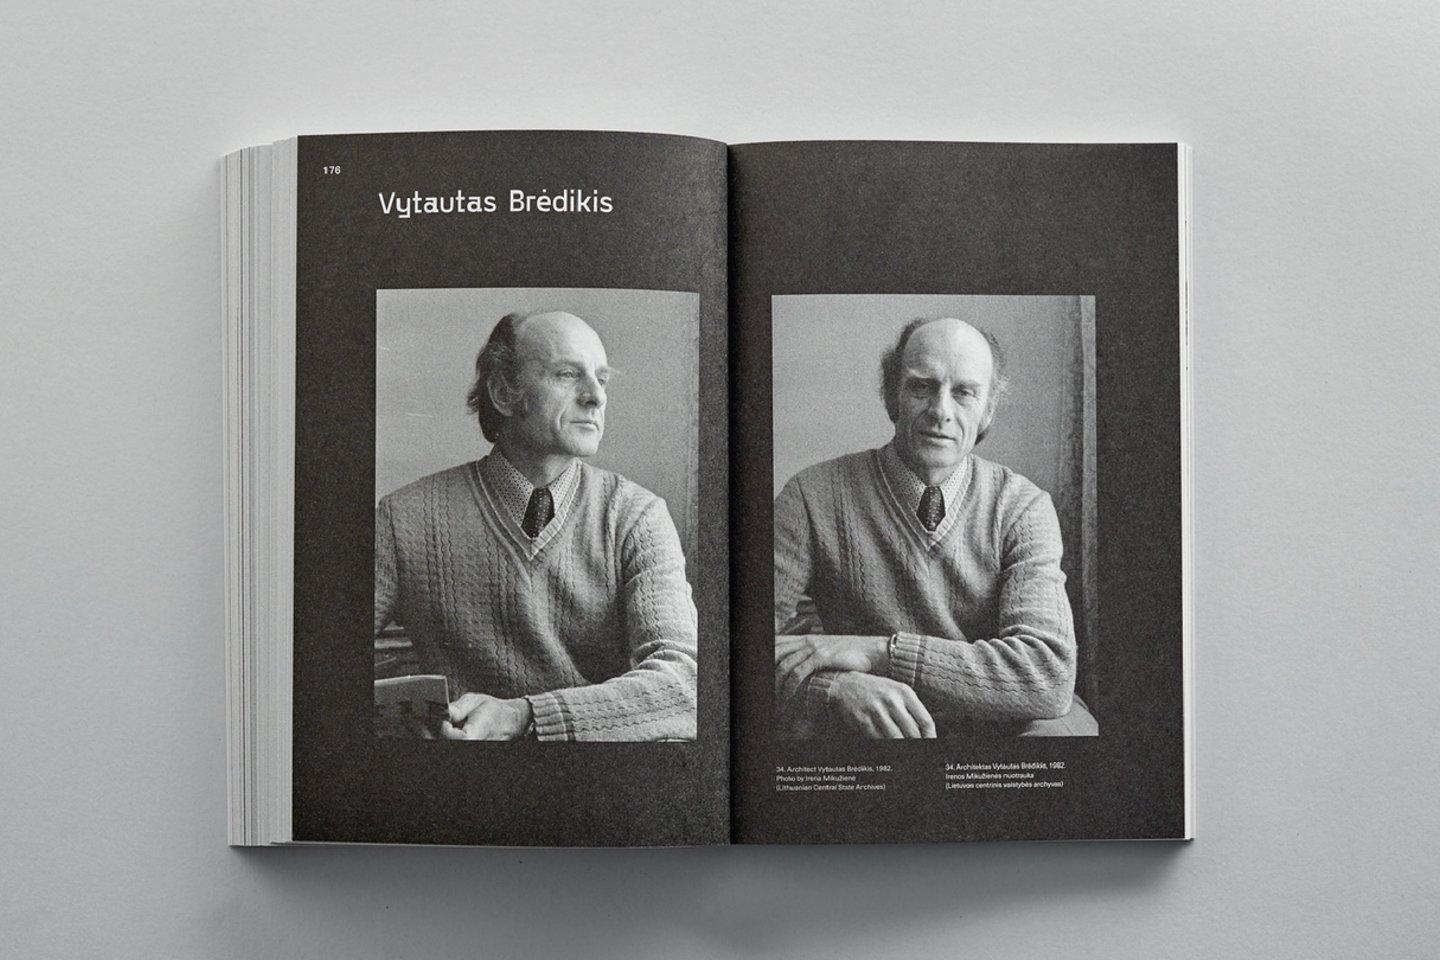 Knygos „Lietuvos architektai pasakoja apie sovietmetį: 1992 m. įrašai“ atvarte – architektas V.Brėdikis. Išleido leidykla „Lapas“.<br>  R.Daškevičiaus nuotr.